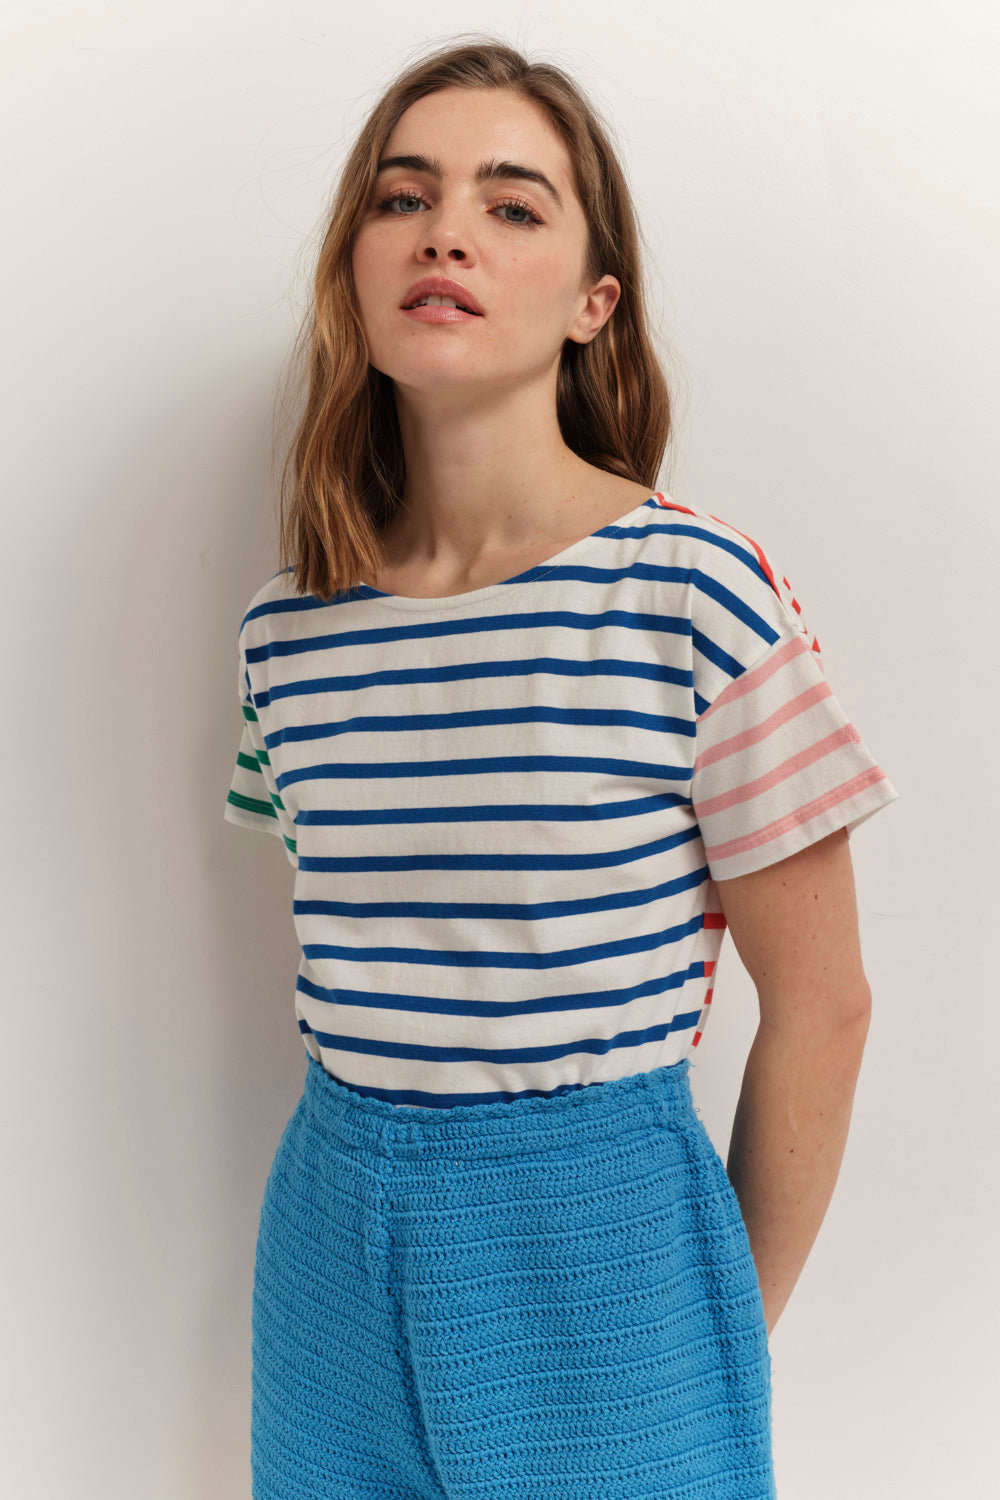 MUSSY - T-shirt marinière à motif rayures couleur